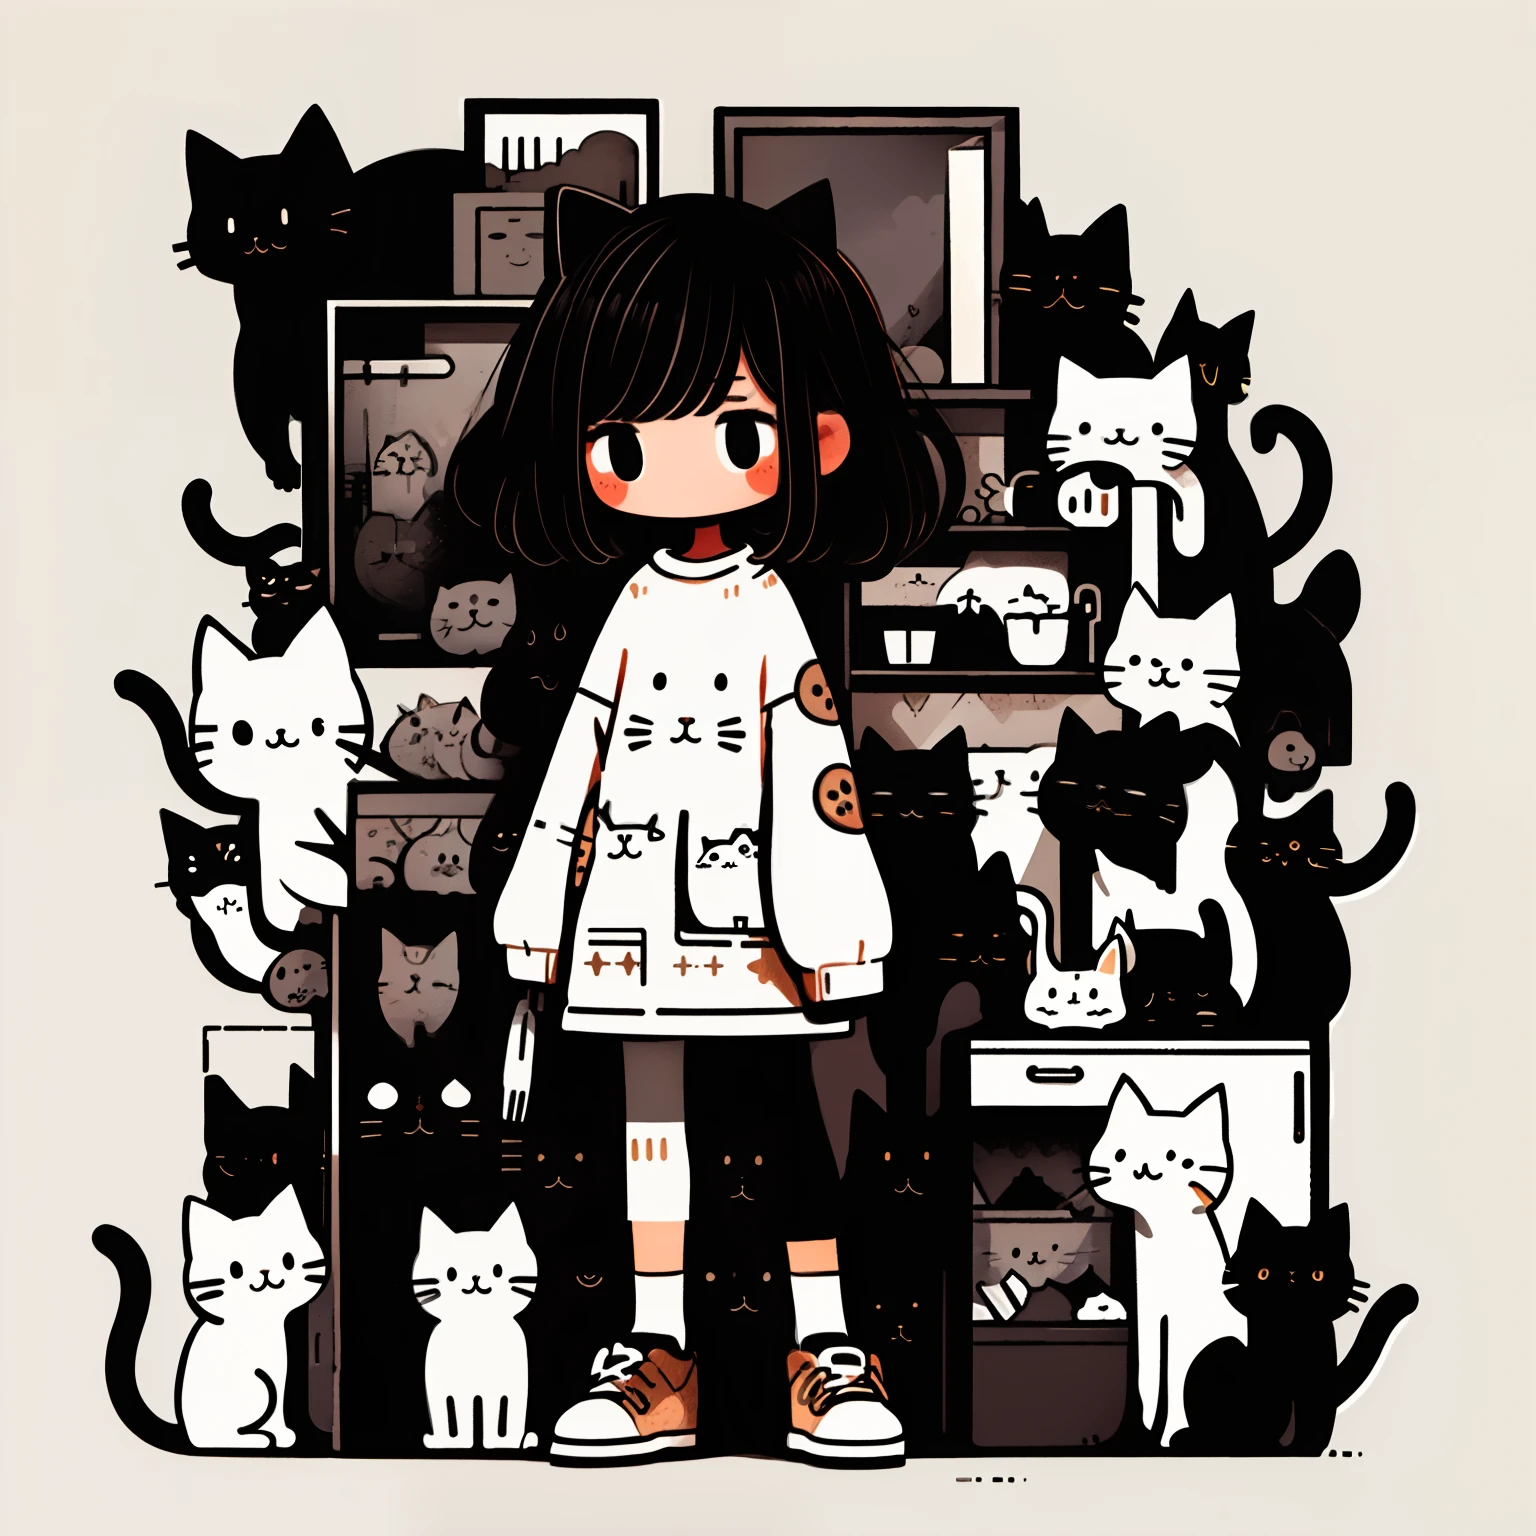 Obra de arte,melhor qualidade,1 menina,gato,mangas compridas,